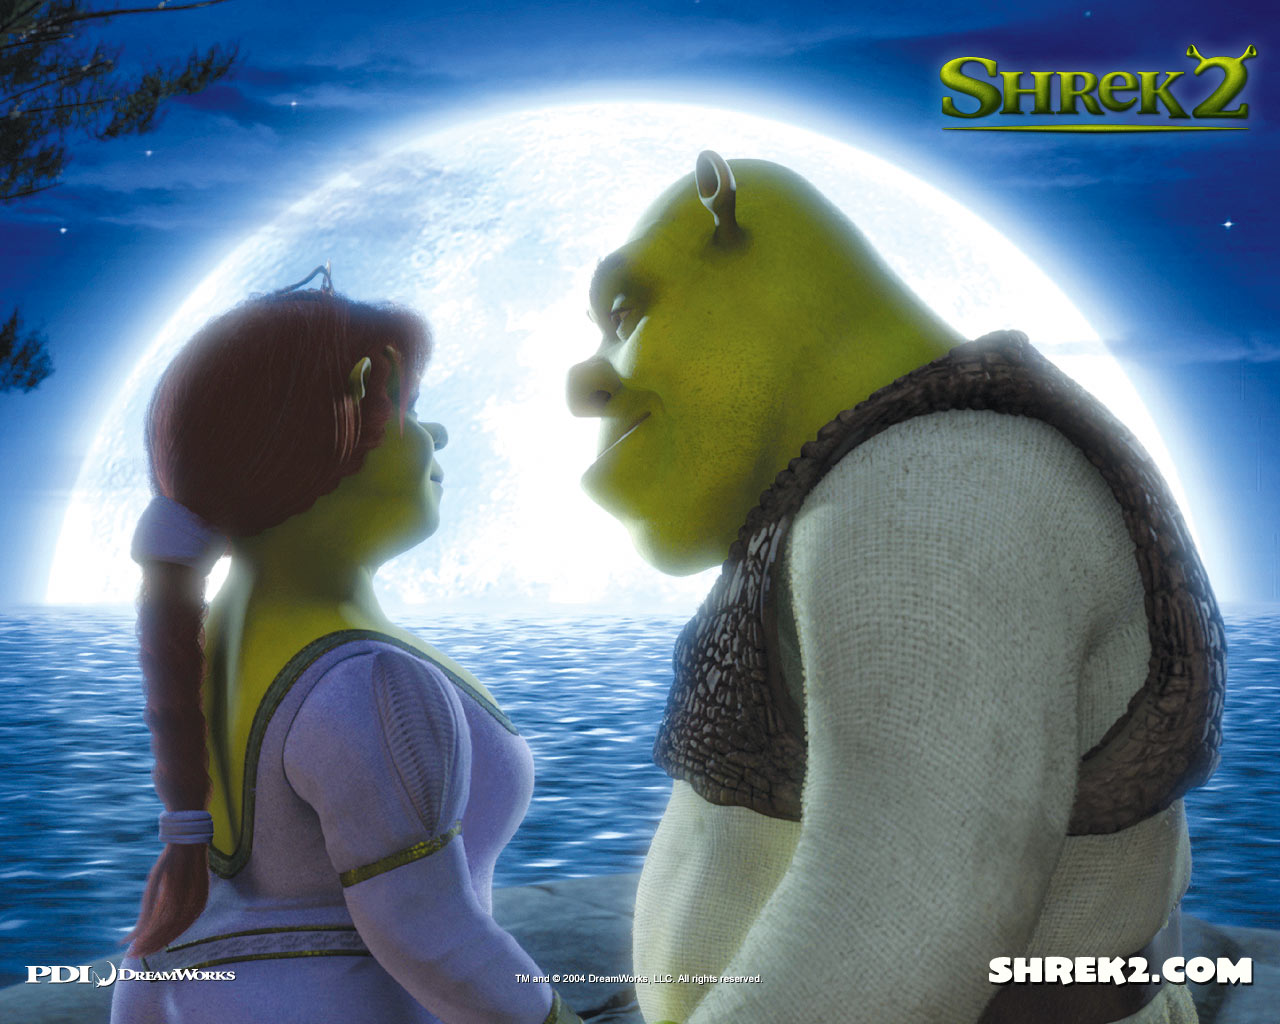 Fondos de Pantalla Shrek Animación descargar imagenes